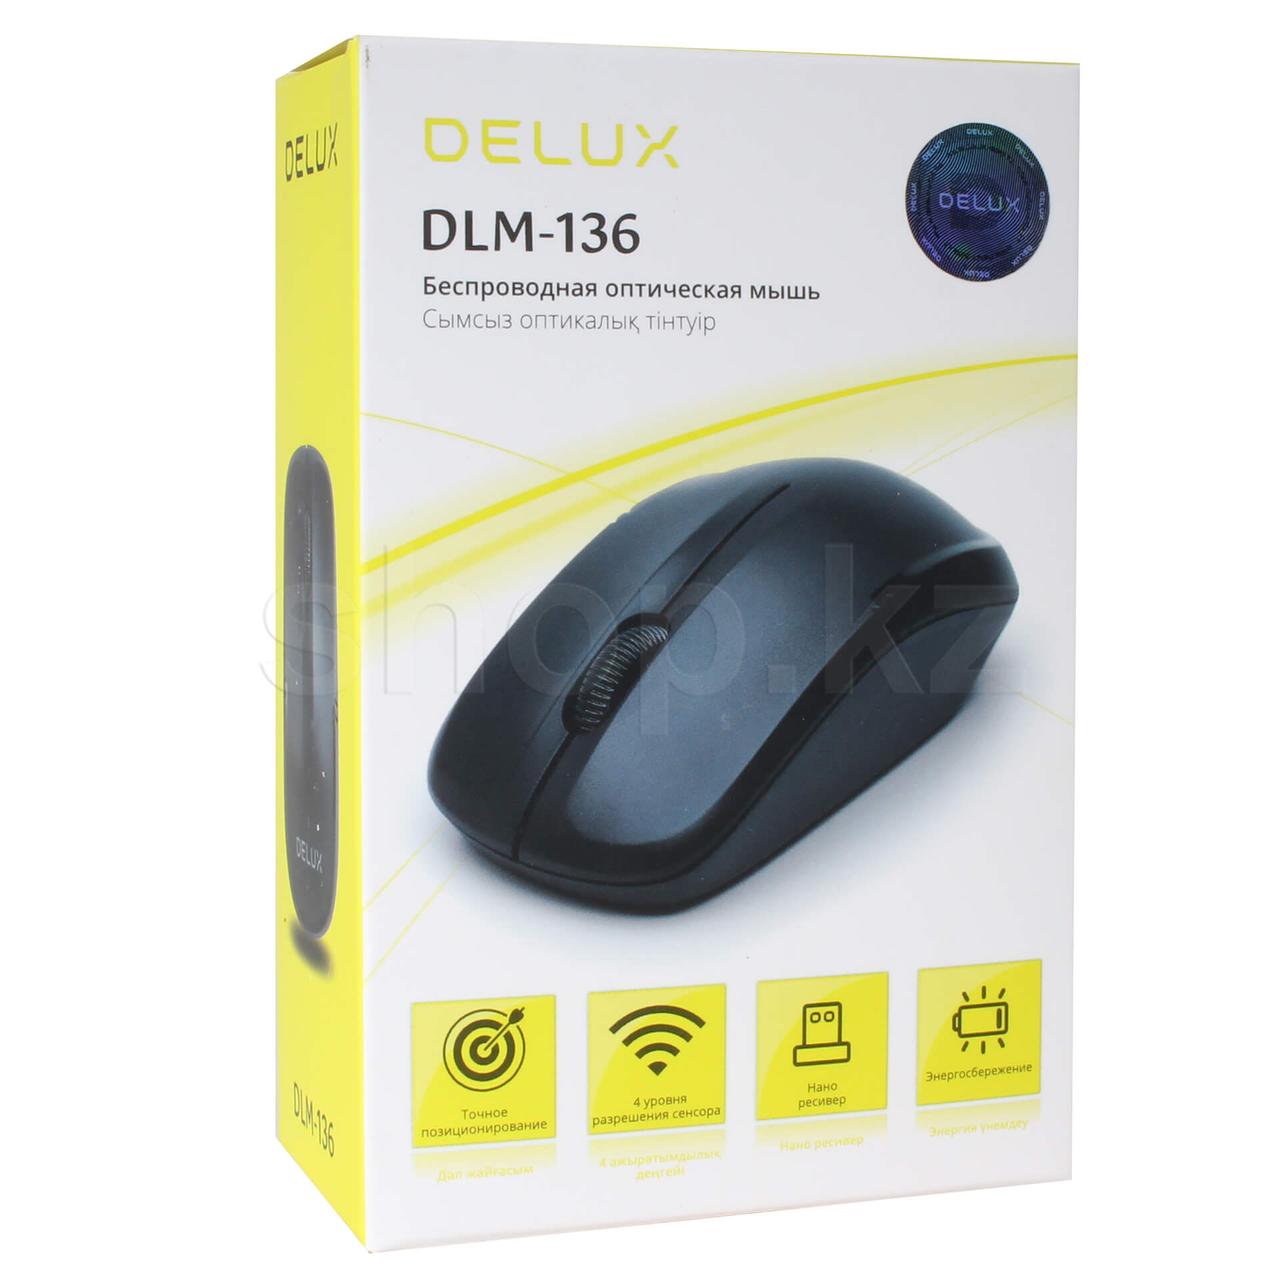 Компьютерная мышь, Delux, DLM-136OGB, 3D, Оптическая, 1200dpi, Беспроводная 2.4ГГц, Нано-ресивер, Эффективная